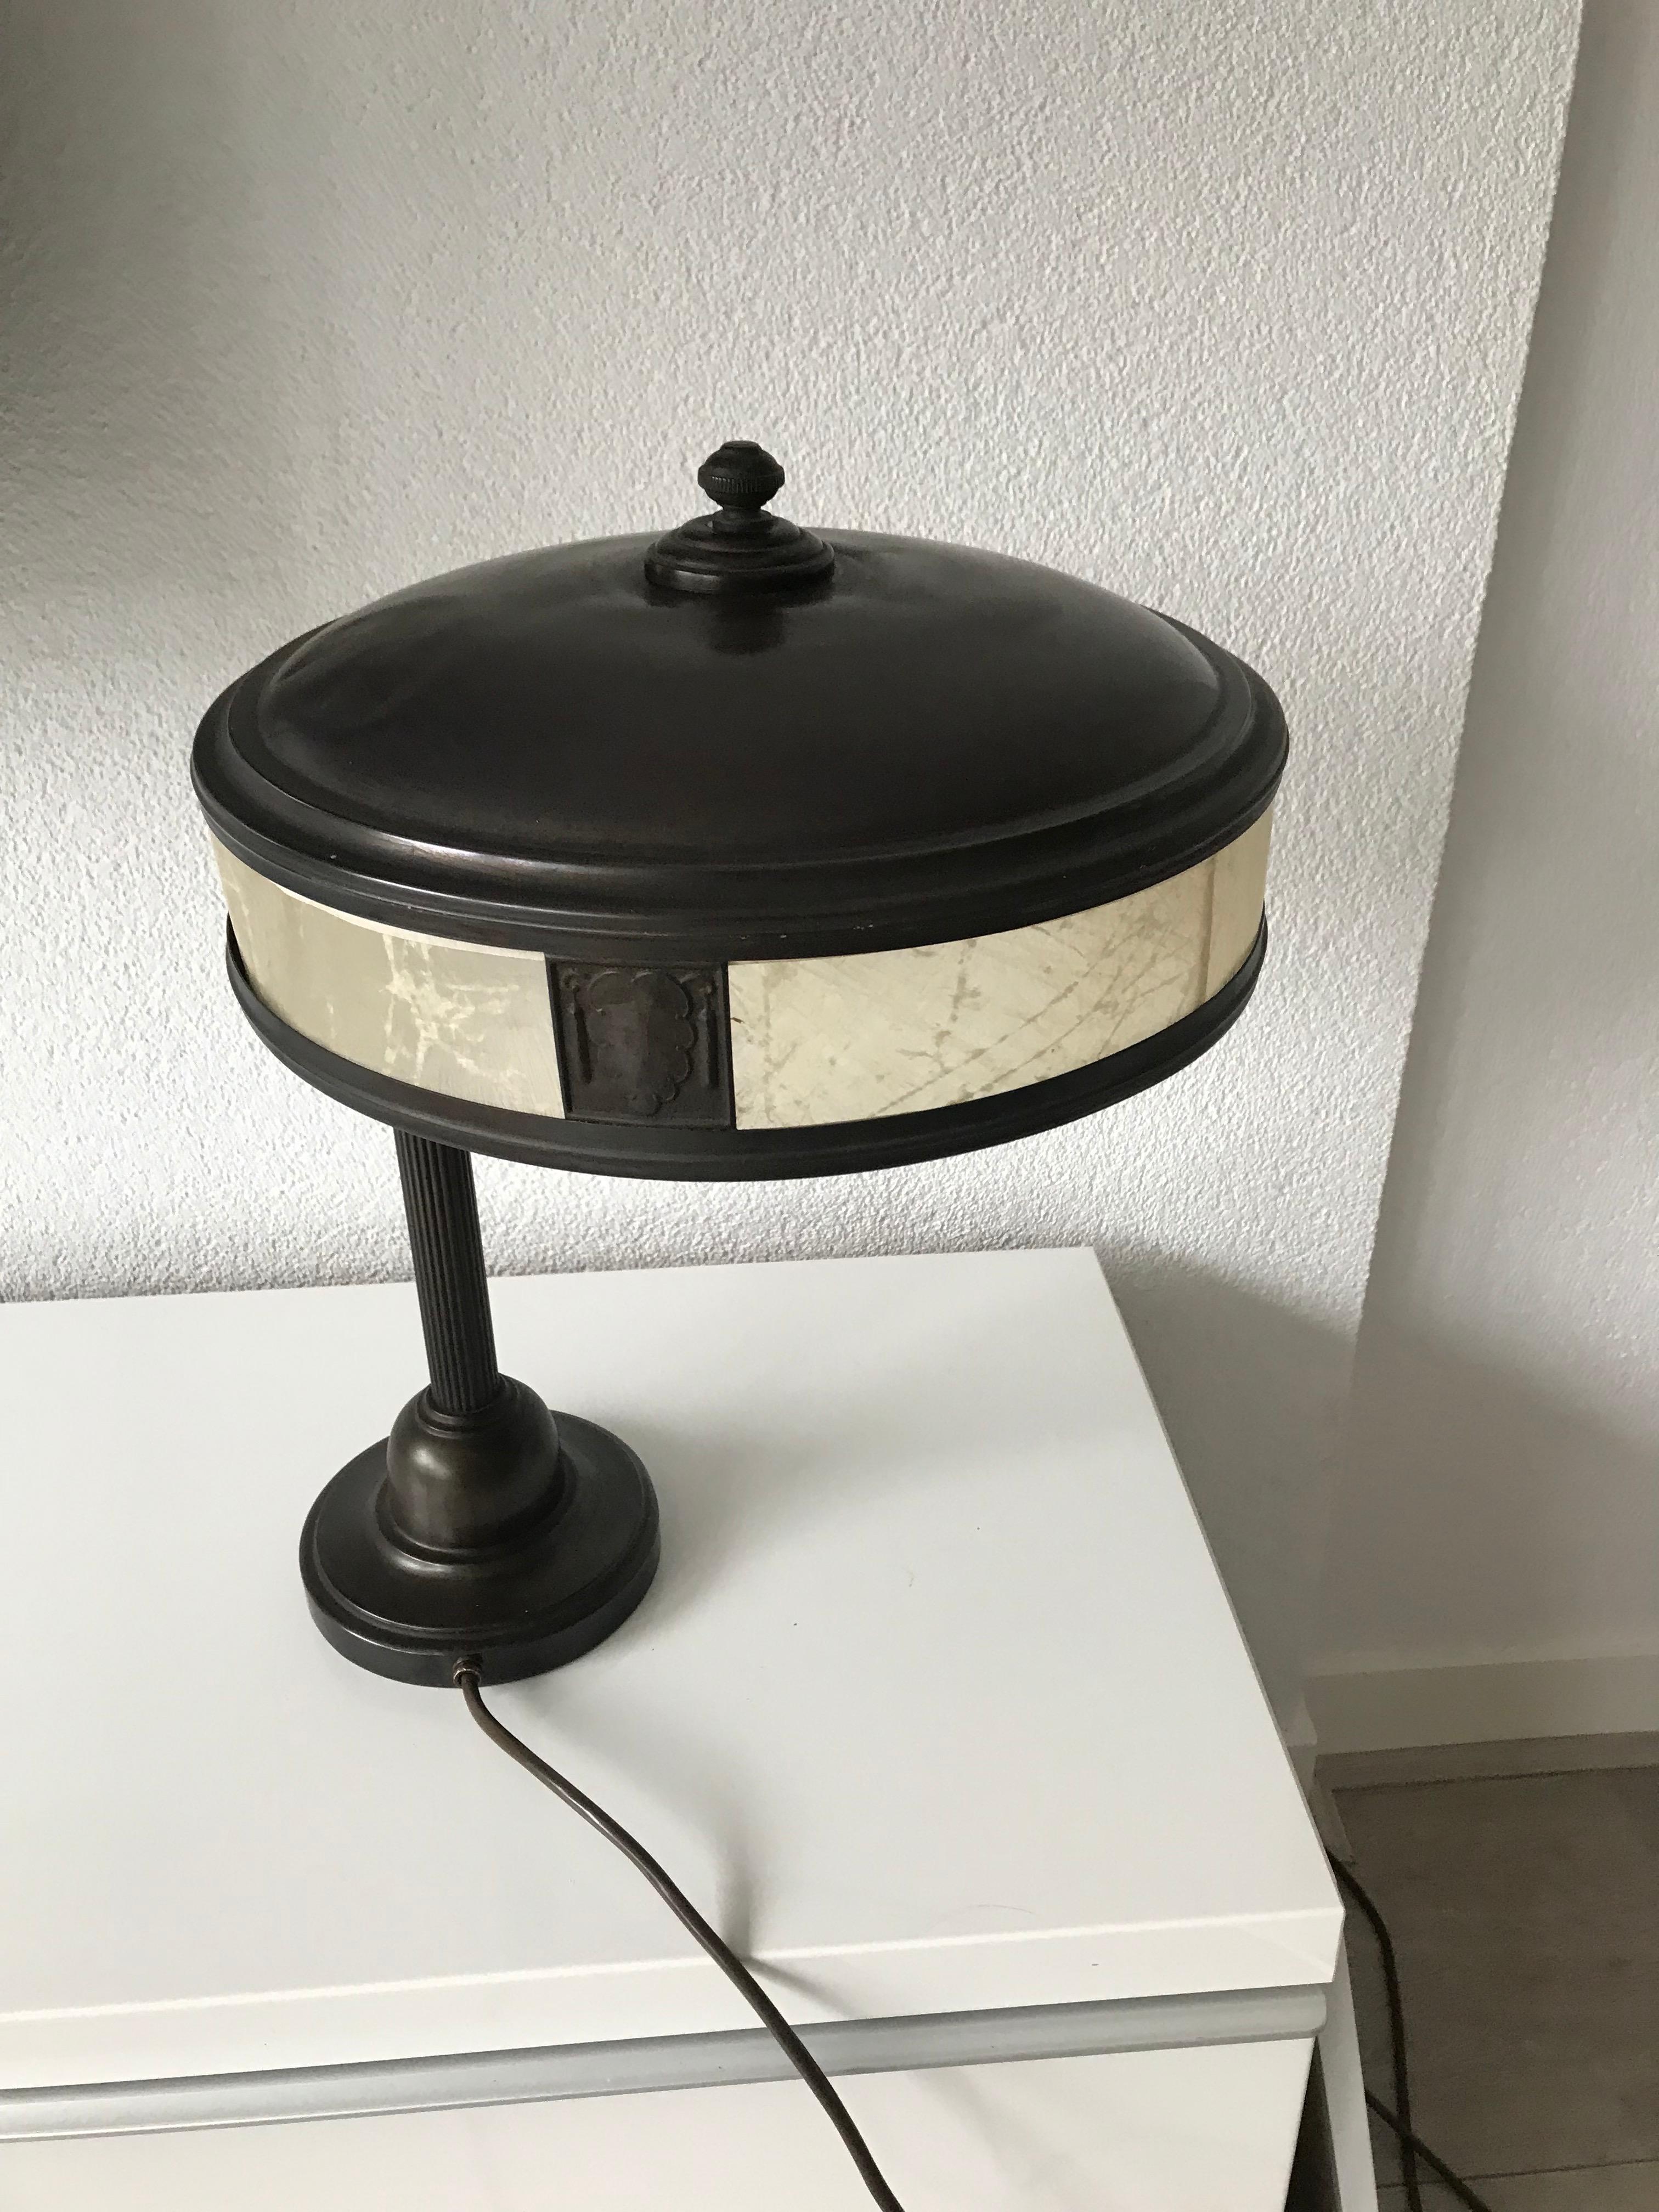 Jugendstil Era Arts & Crafts Patinated Brass Table or Desk Standard Lamp 9